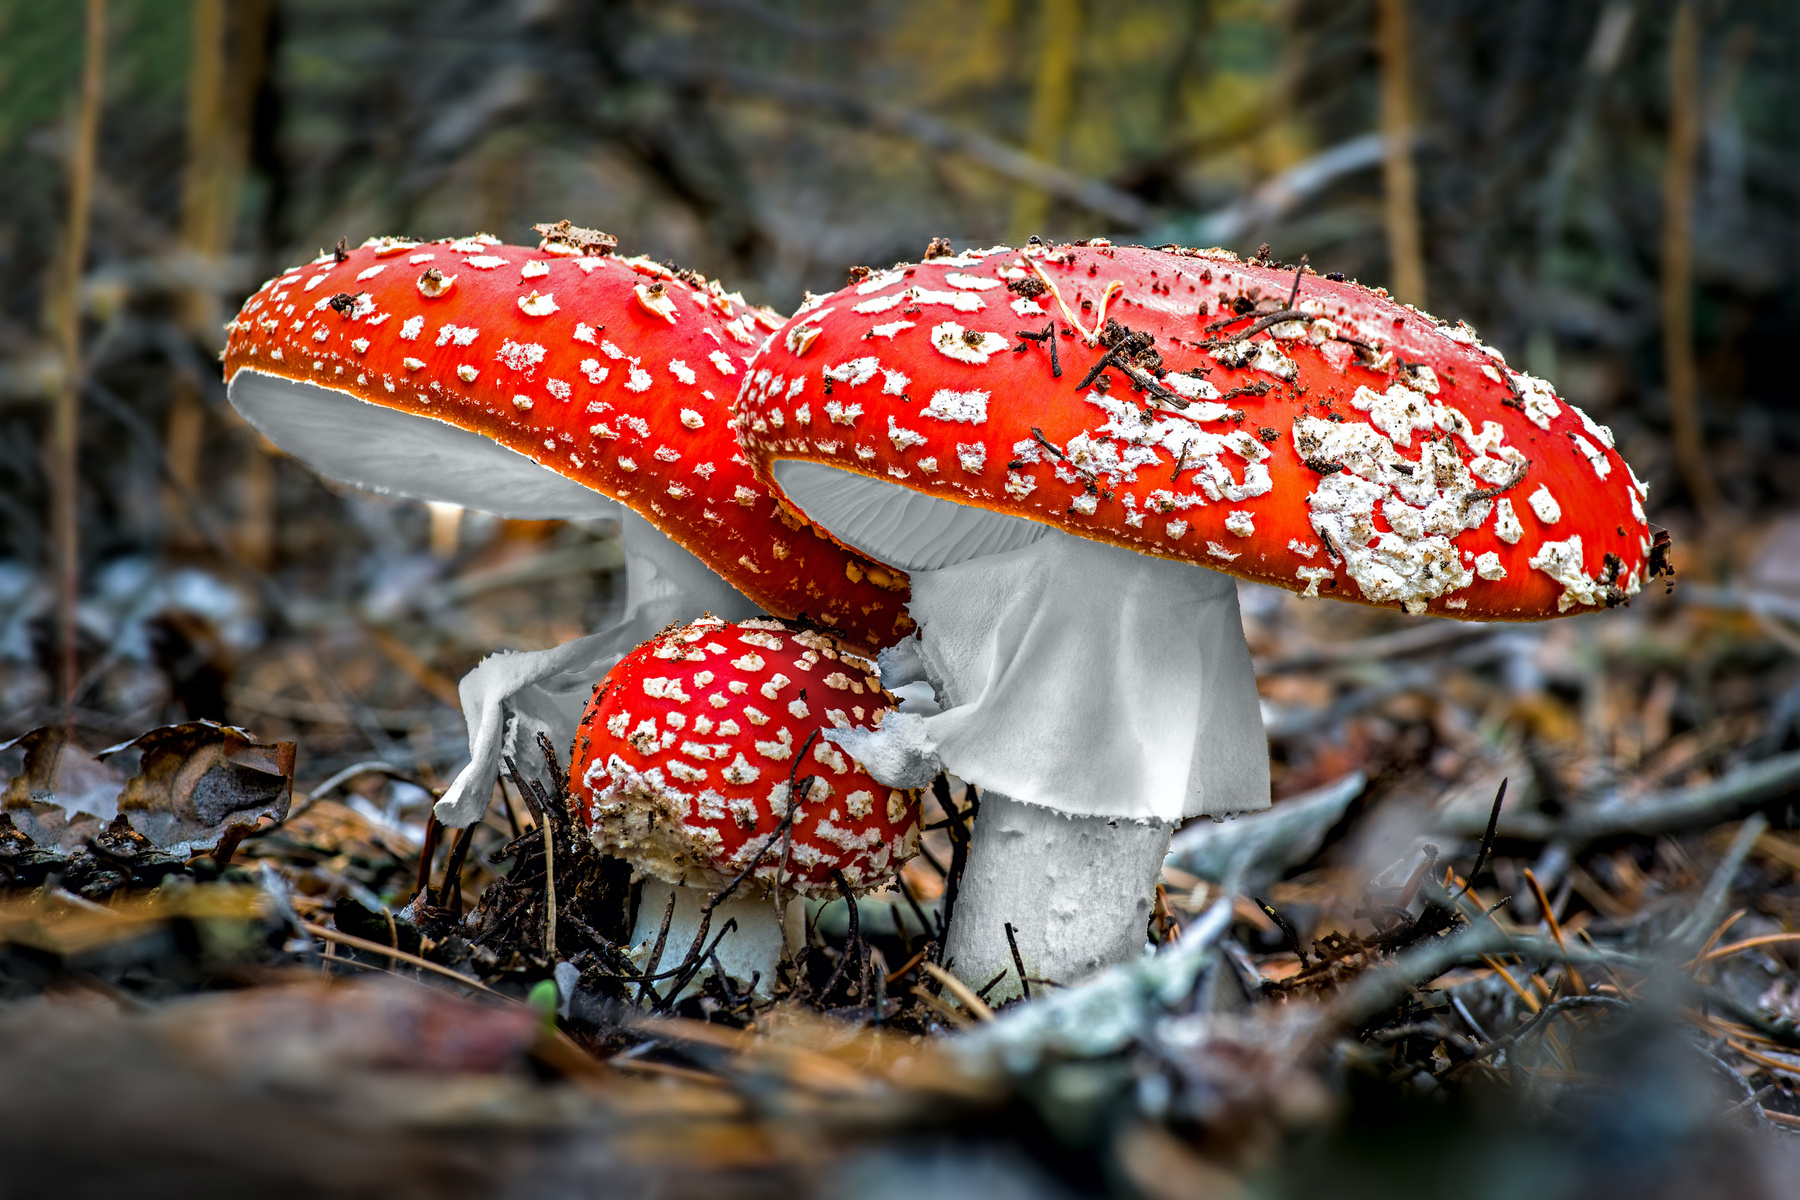 Ядовитая семейка мухоморы три трое грибы грибочки ядовитые природа опасность лес осень макро